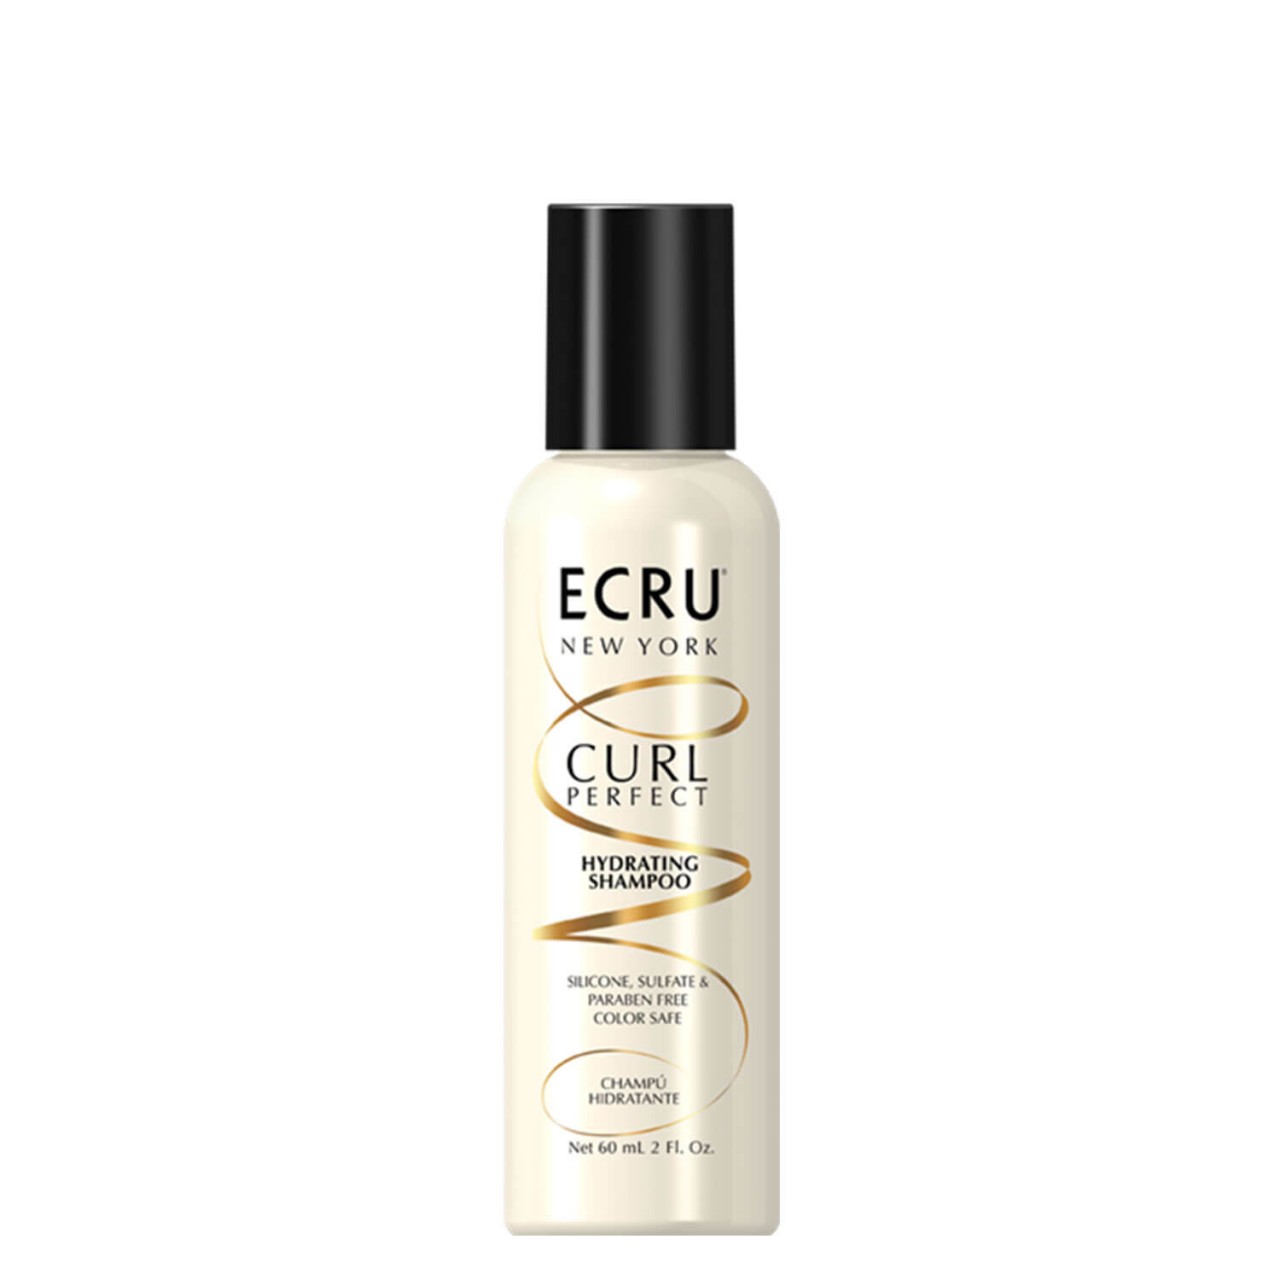 Ecru Curl Perfect - Hydrating Shampoo von Ecru New York